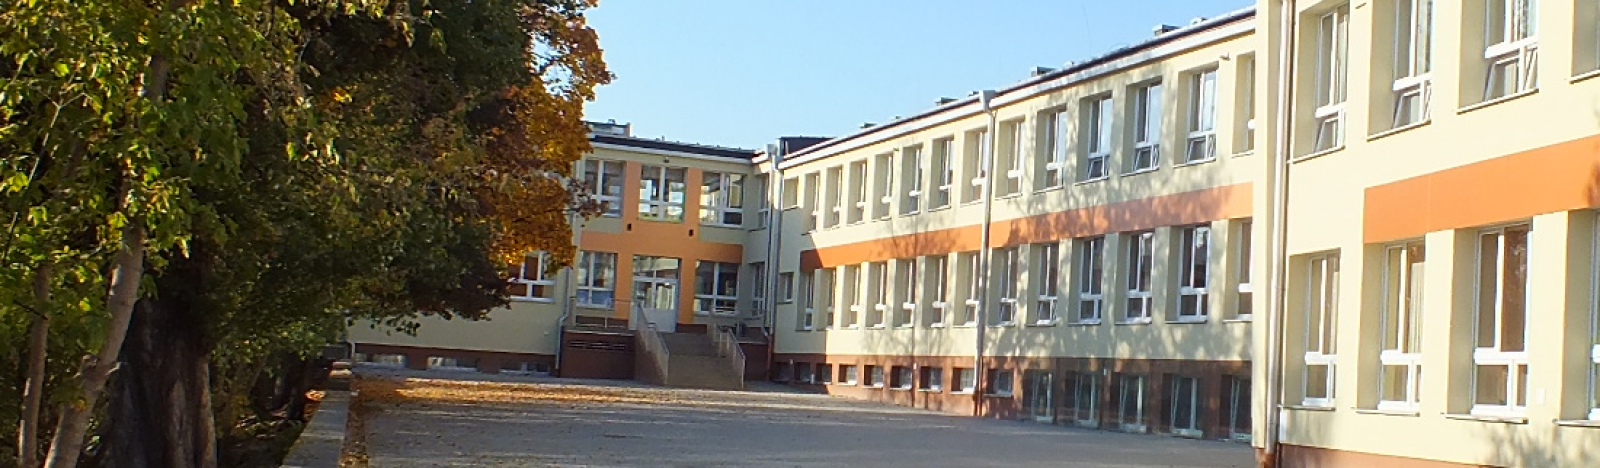 widok szkoły